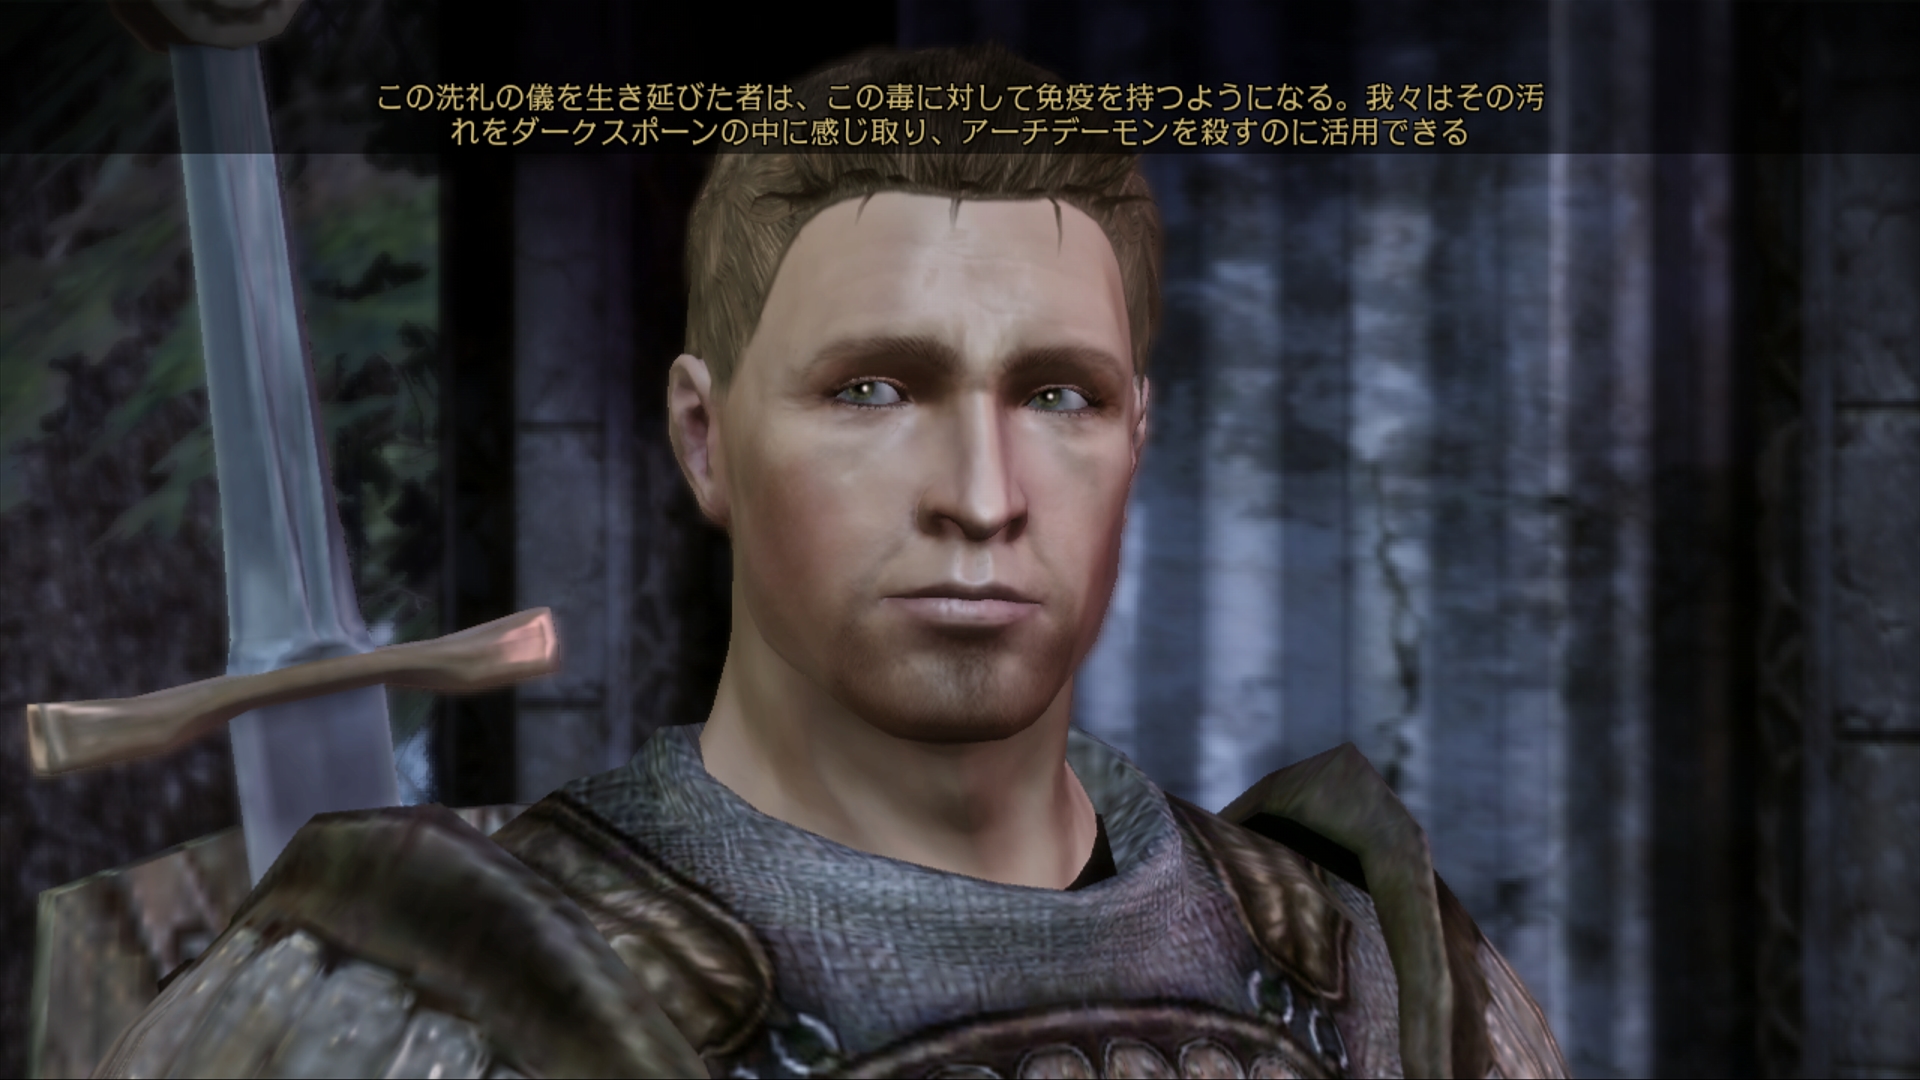 画像集 030 Dragon Age Origins パーティメンバー アリスター モリガン を紹介 プレイヤーの選択 行動で変化する 好感度 とは 4gamer Net